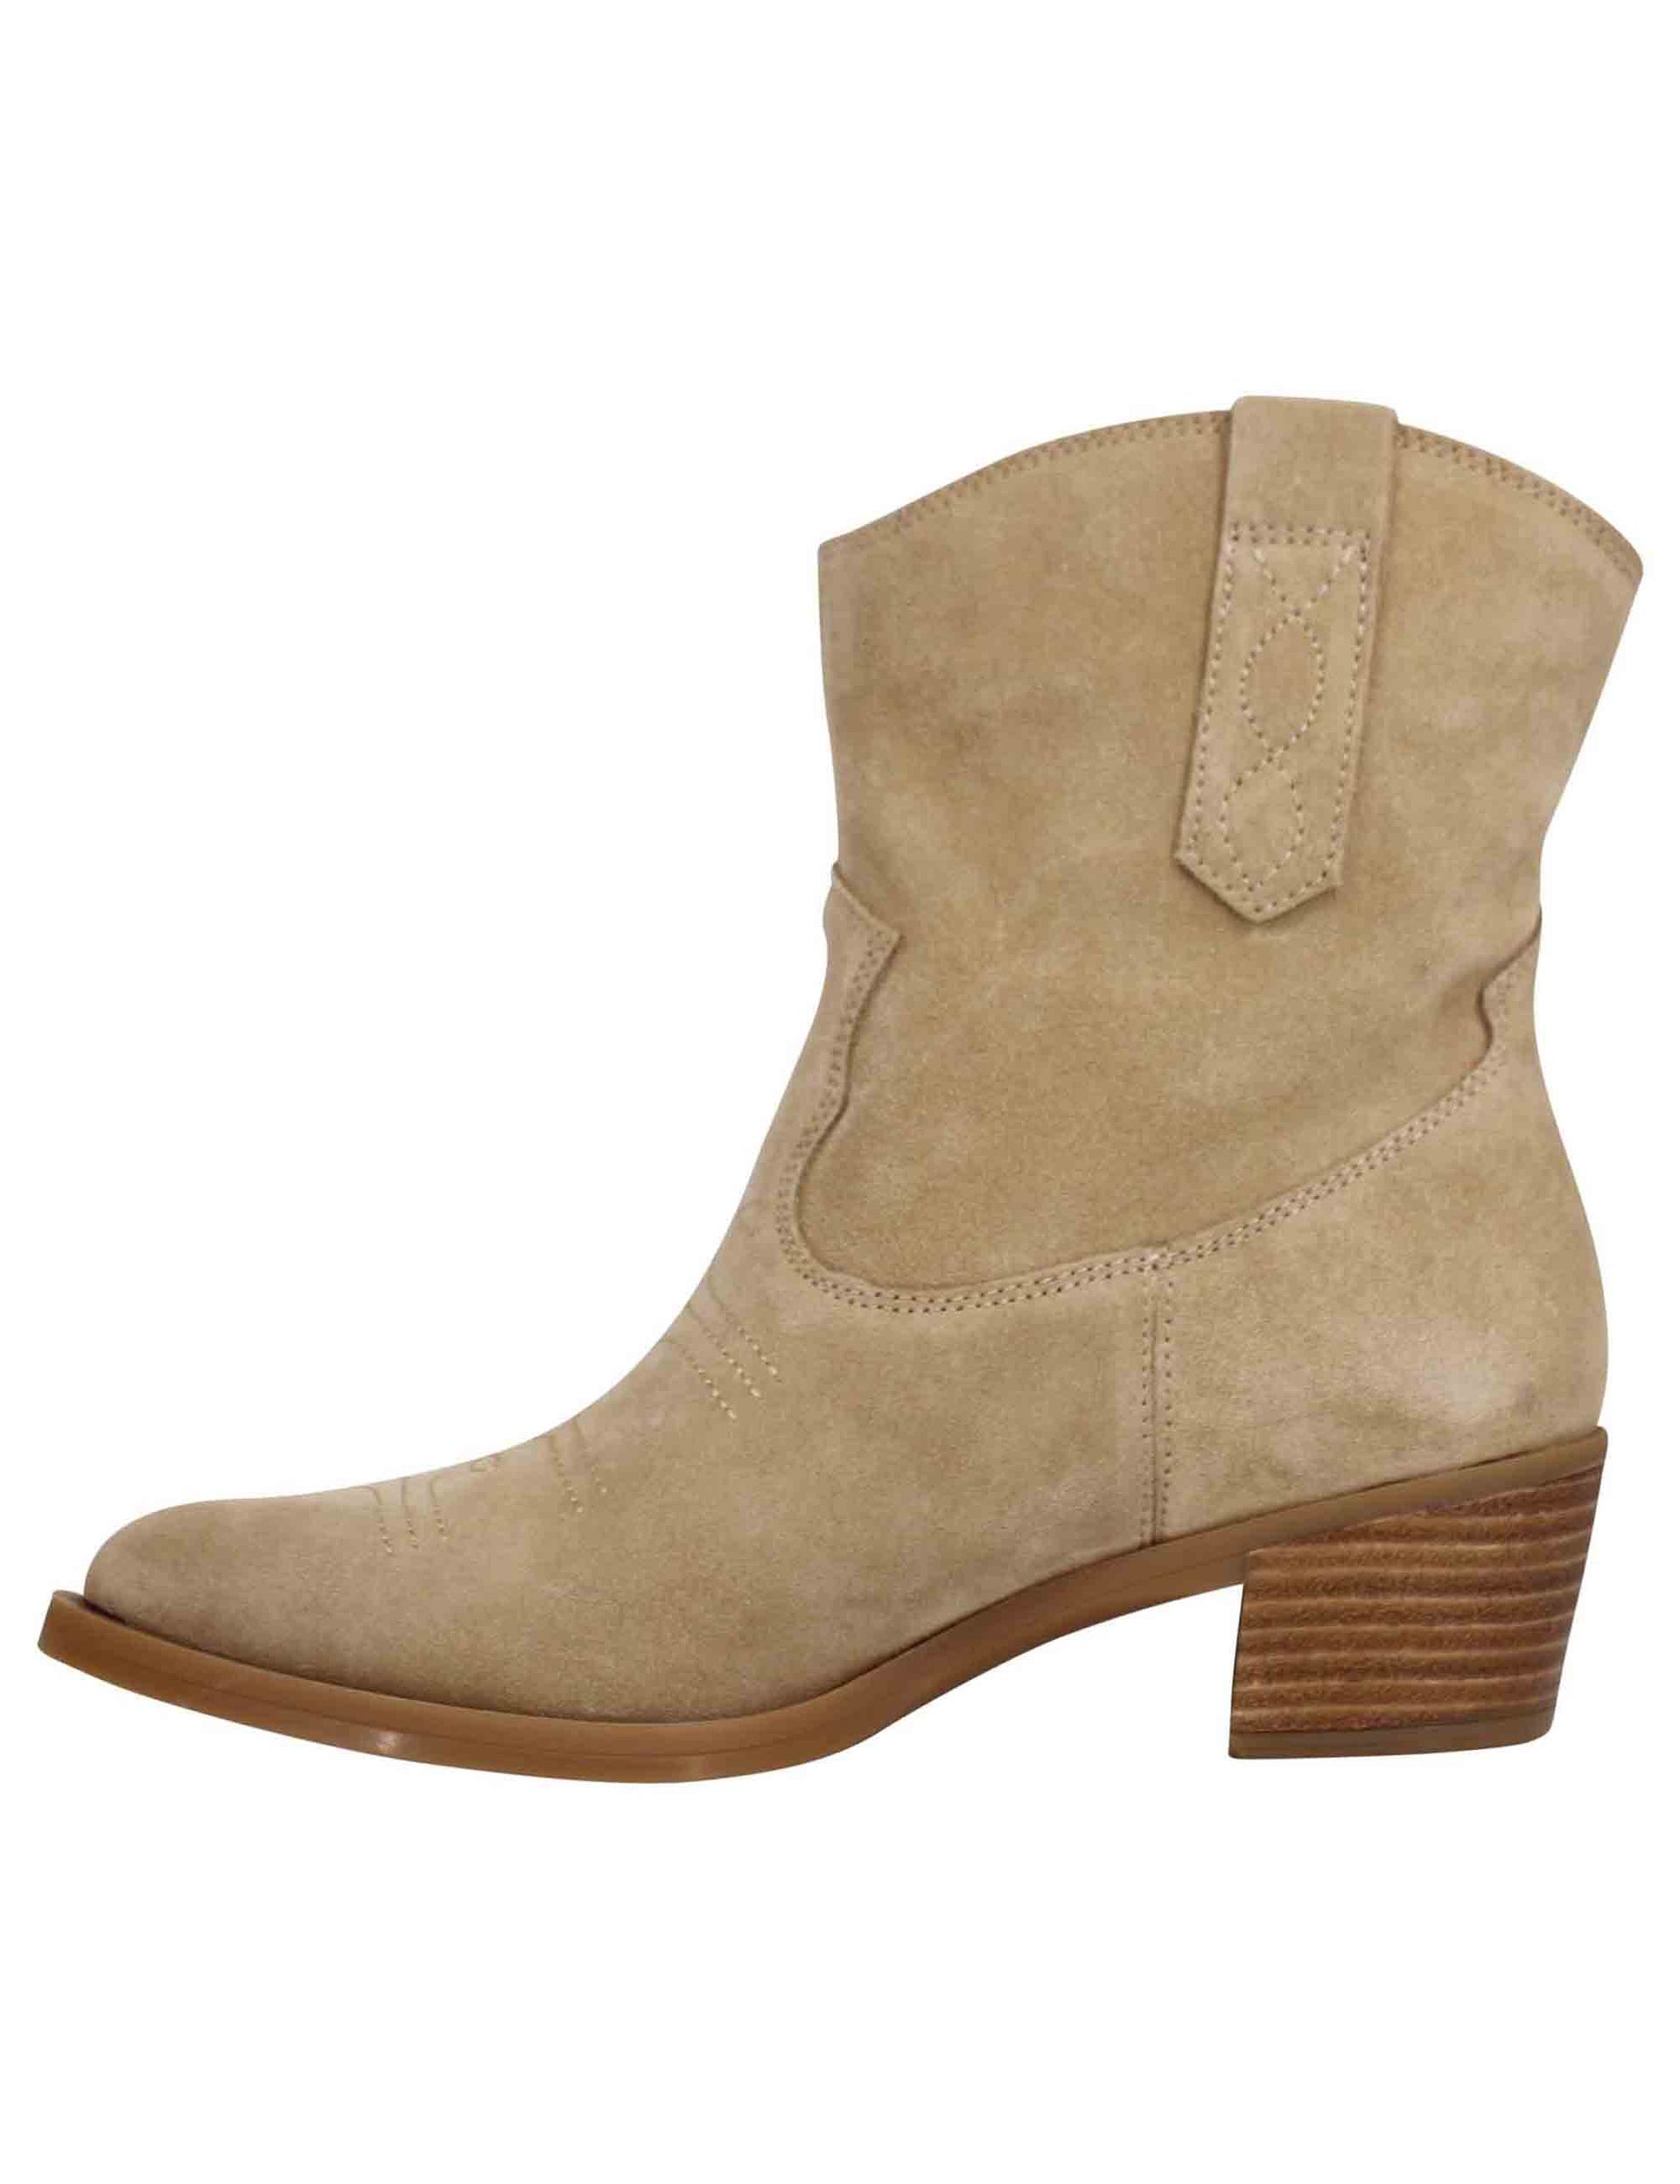 Women's Texan boots in beige suede